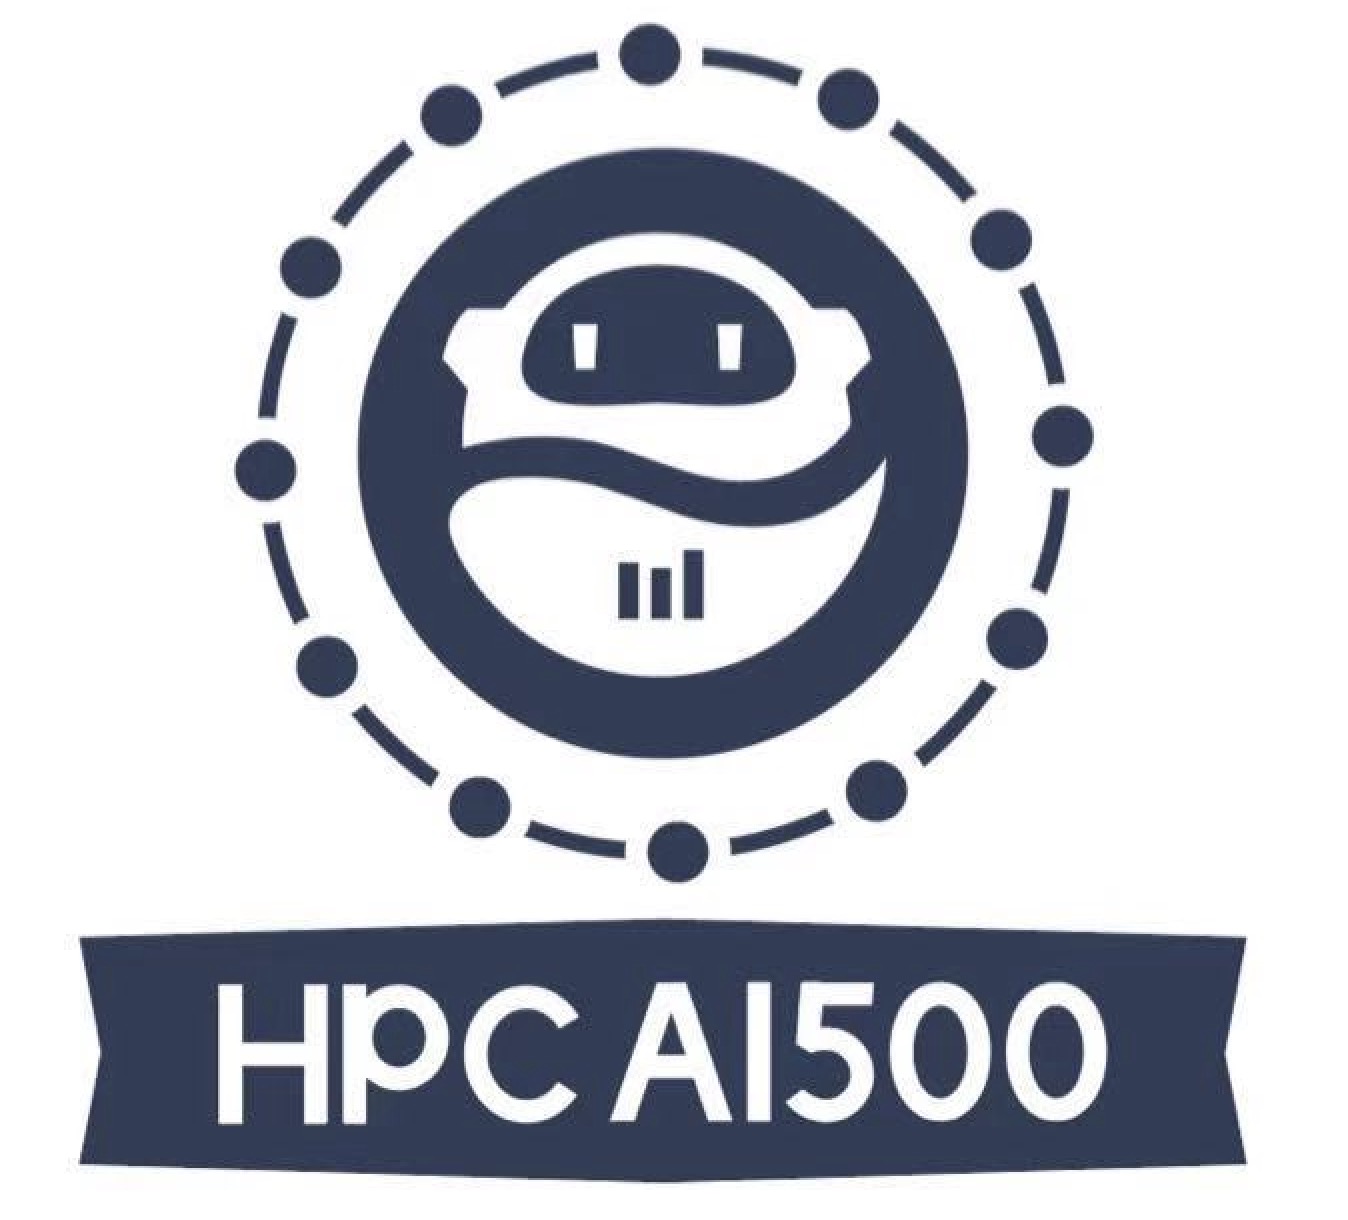 HPC AI500 logo